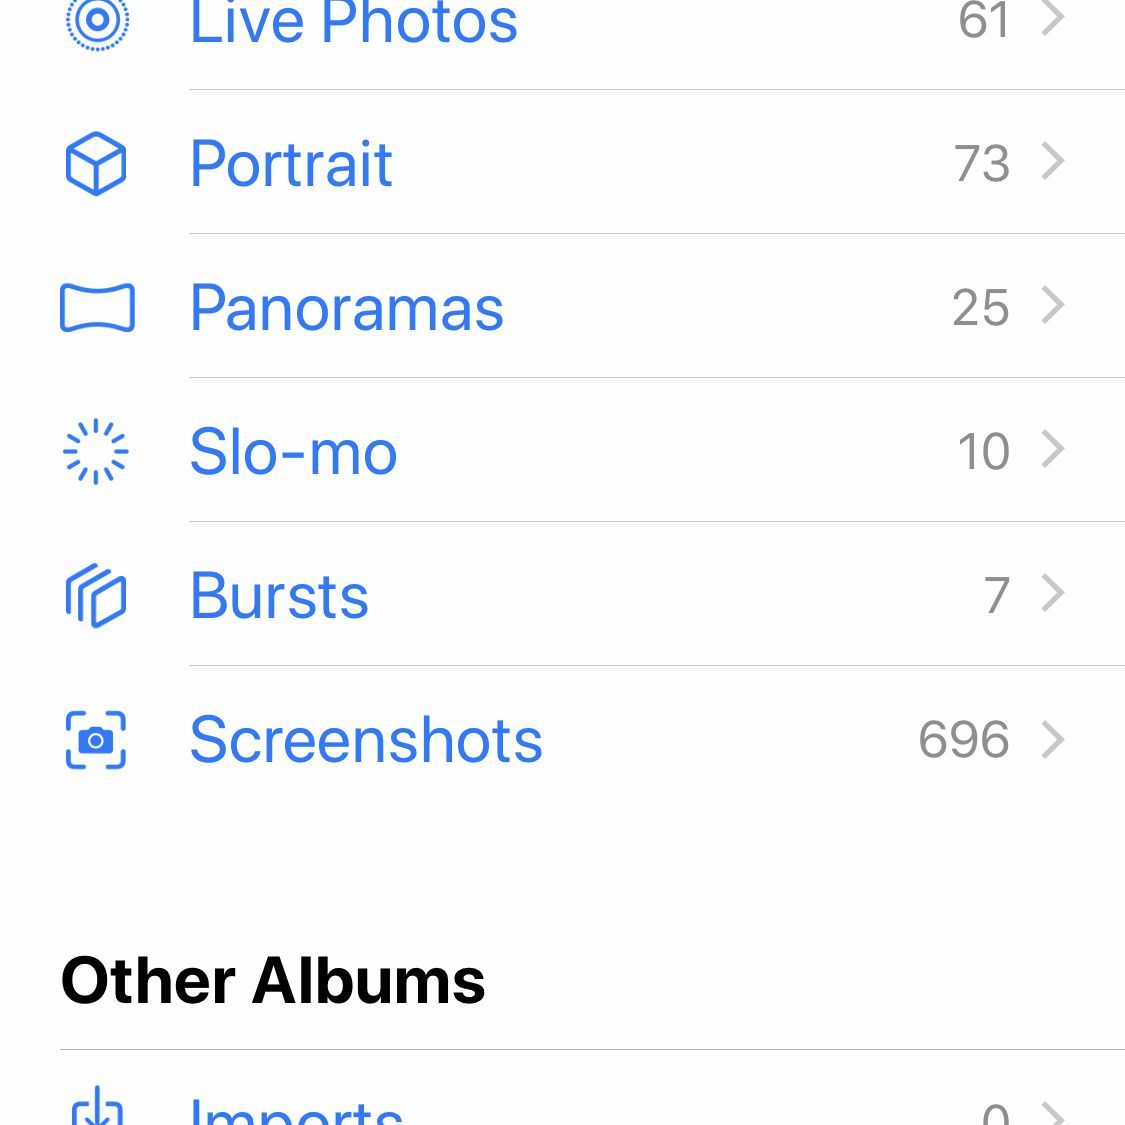 Снимок экрана приложения iOS Фото с его альбомами по умолчанию